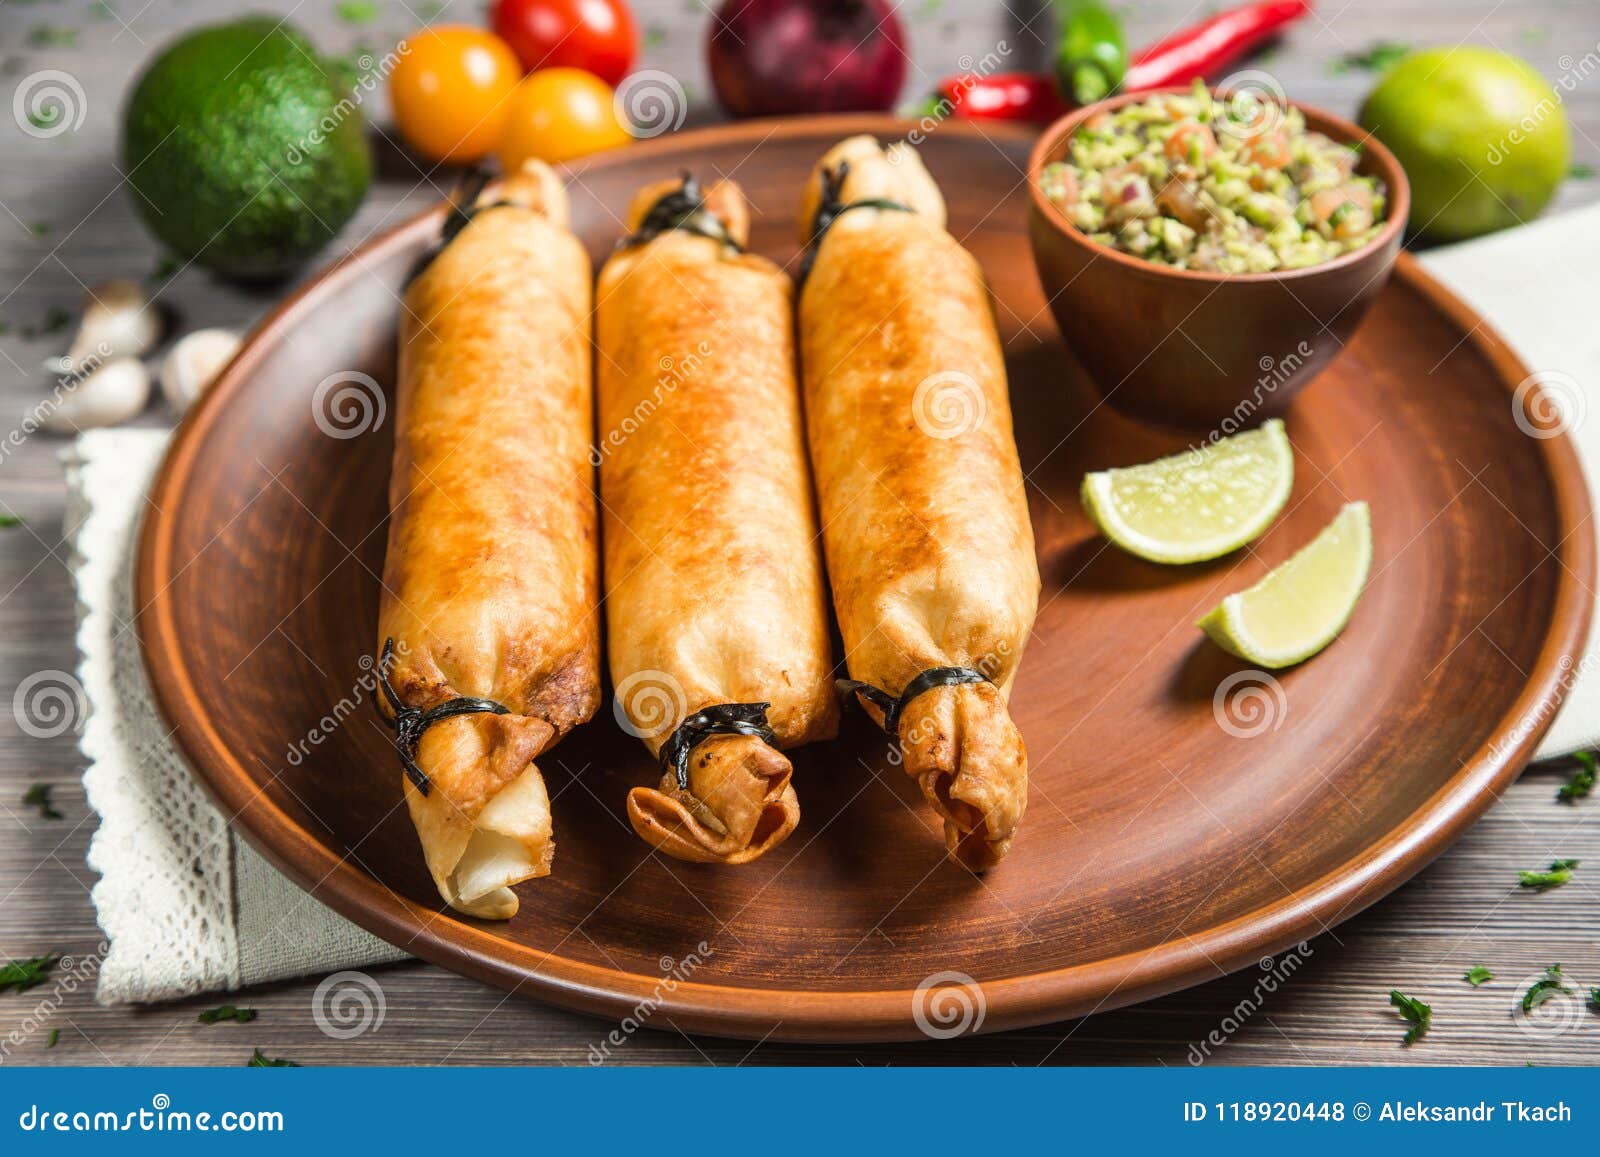 Chimichanga/molhado Fried Burrito Com Guacamole E Creme De Leite